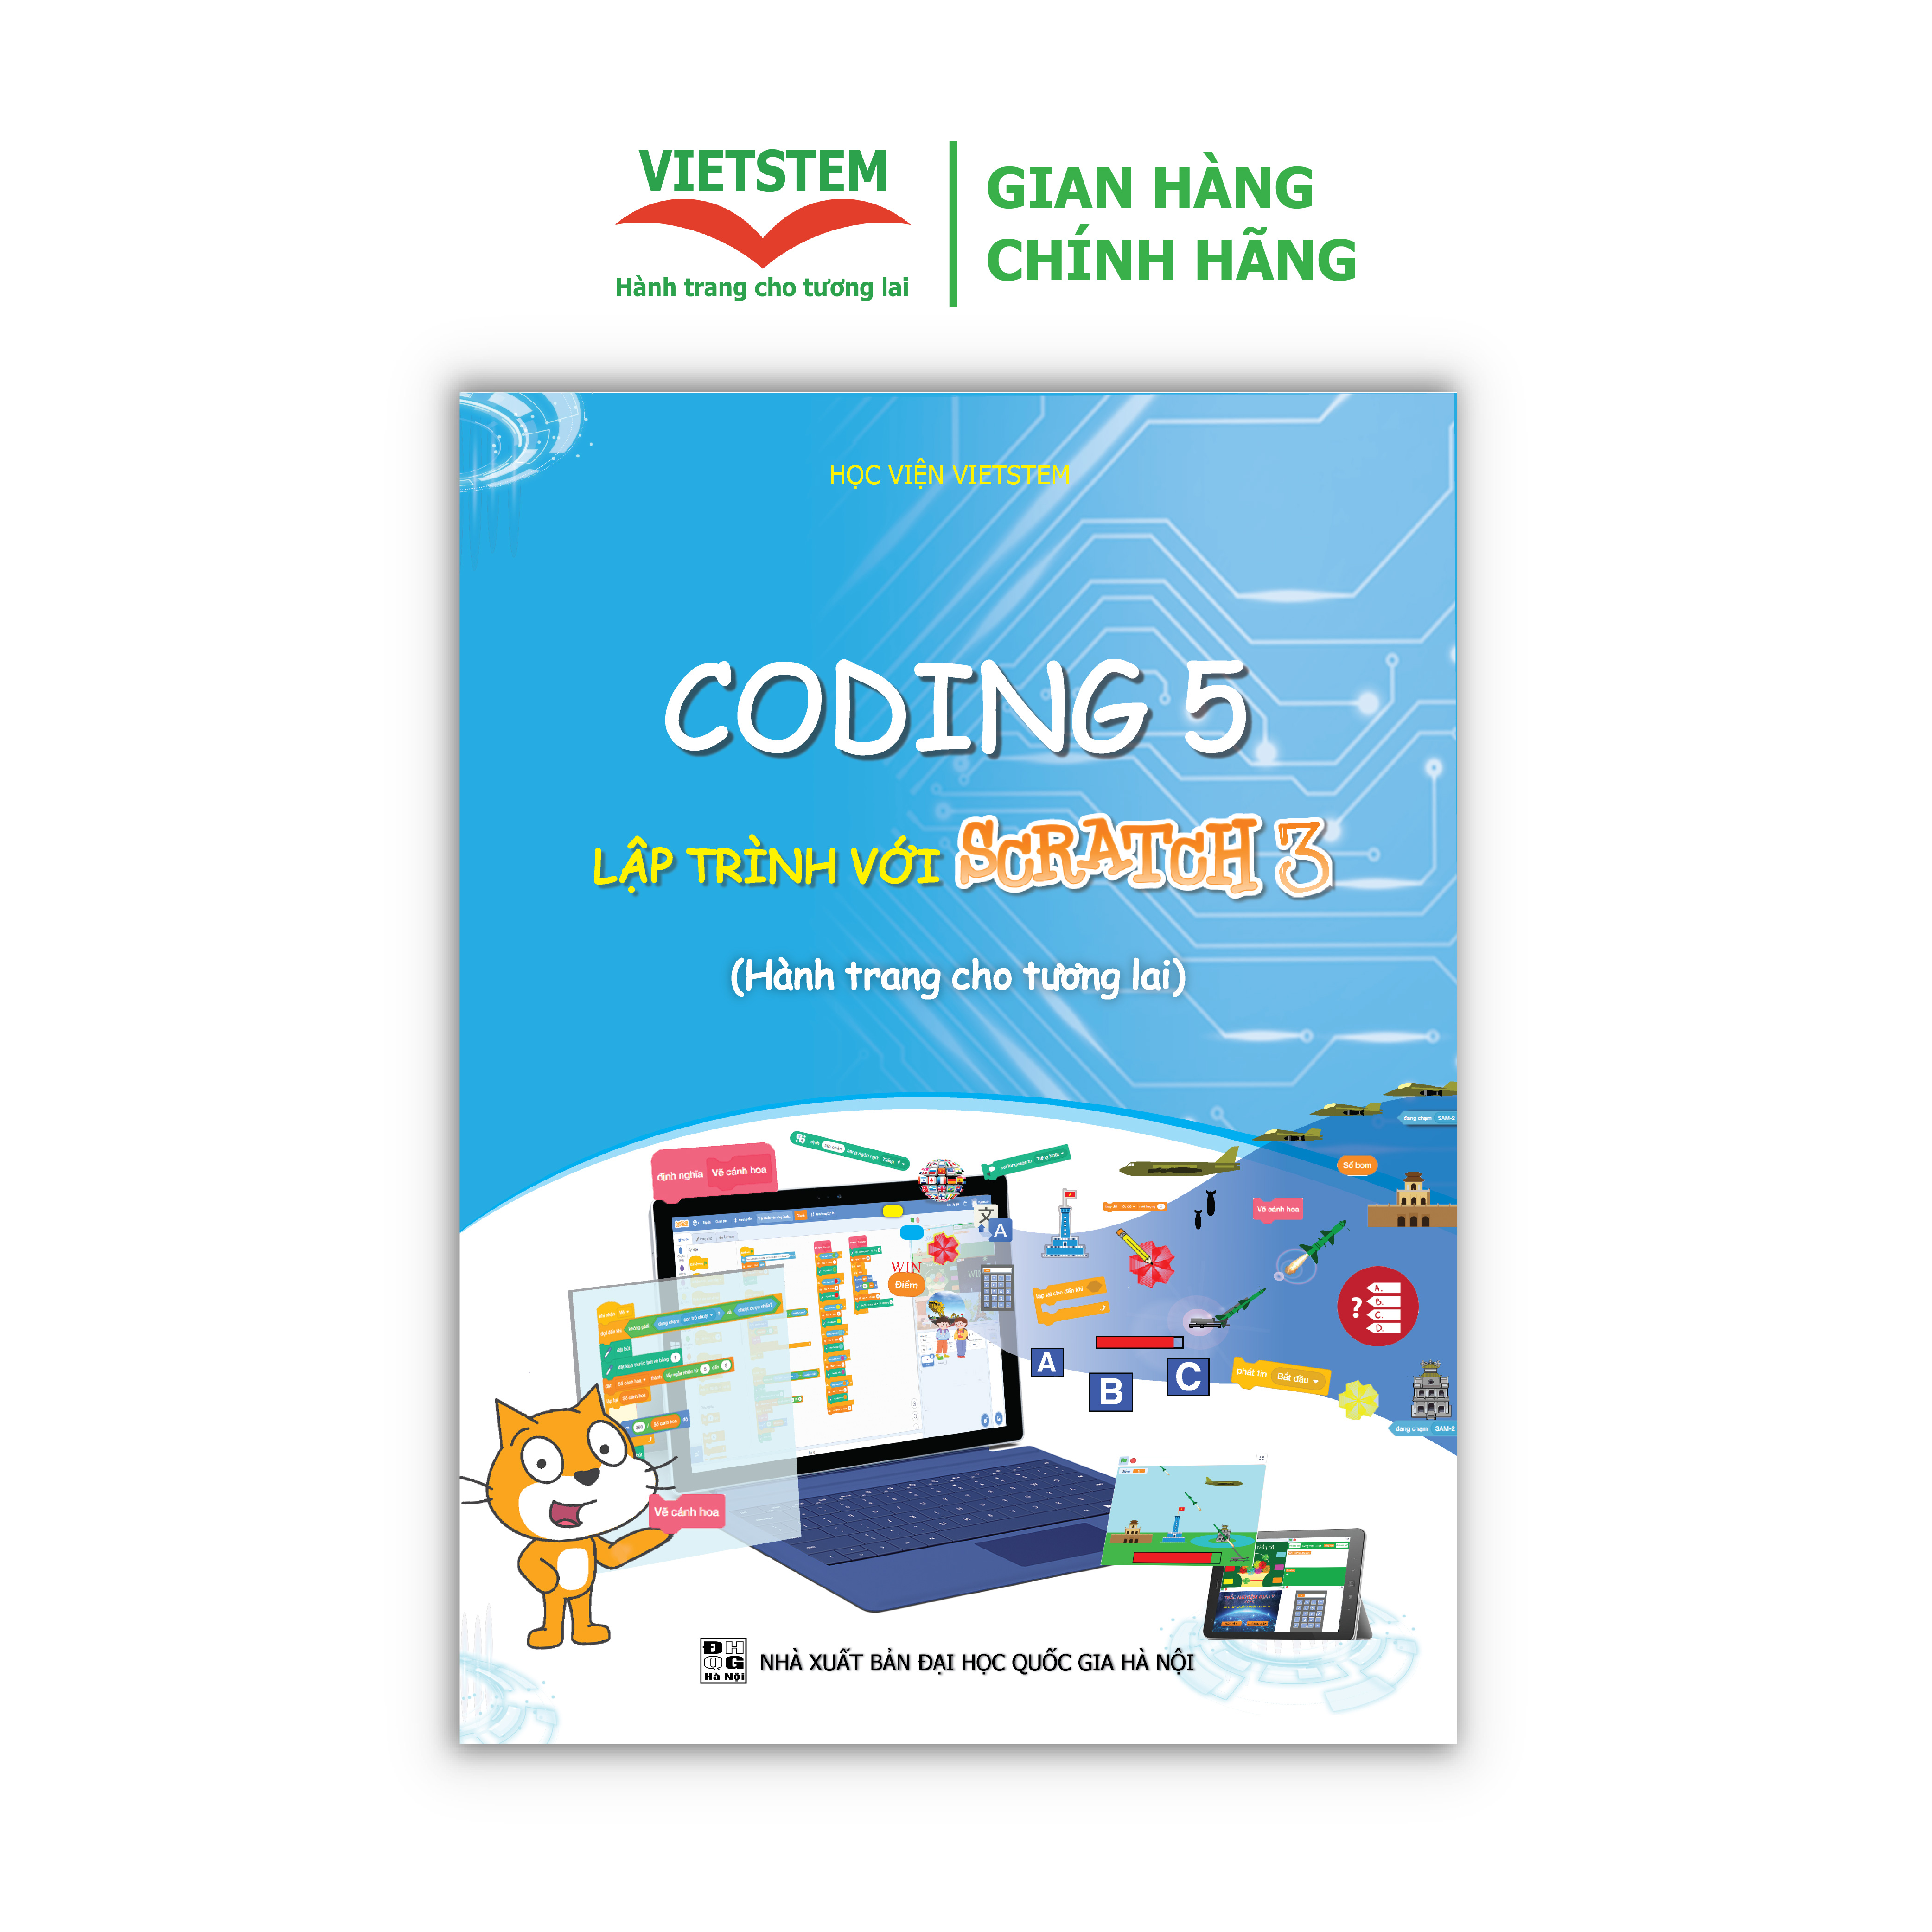 Coding 5 lập trình với Scratch 3 Dành cho học sinh lớp 5